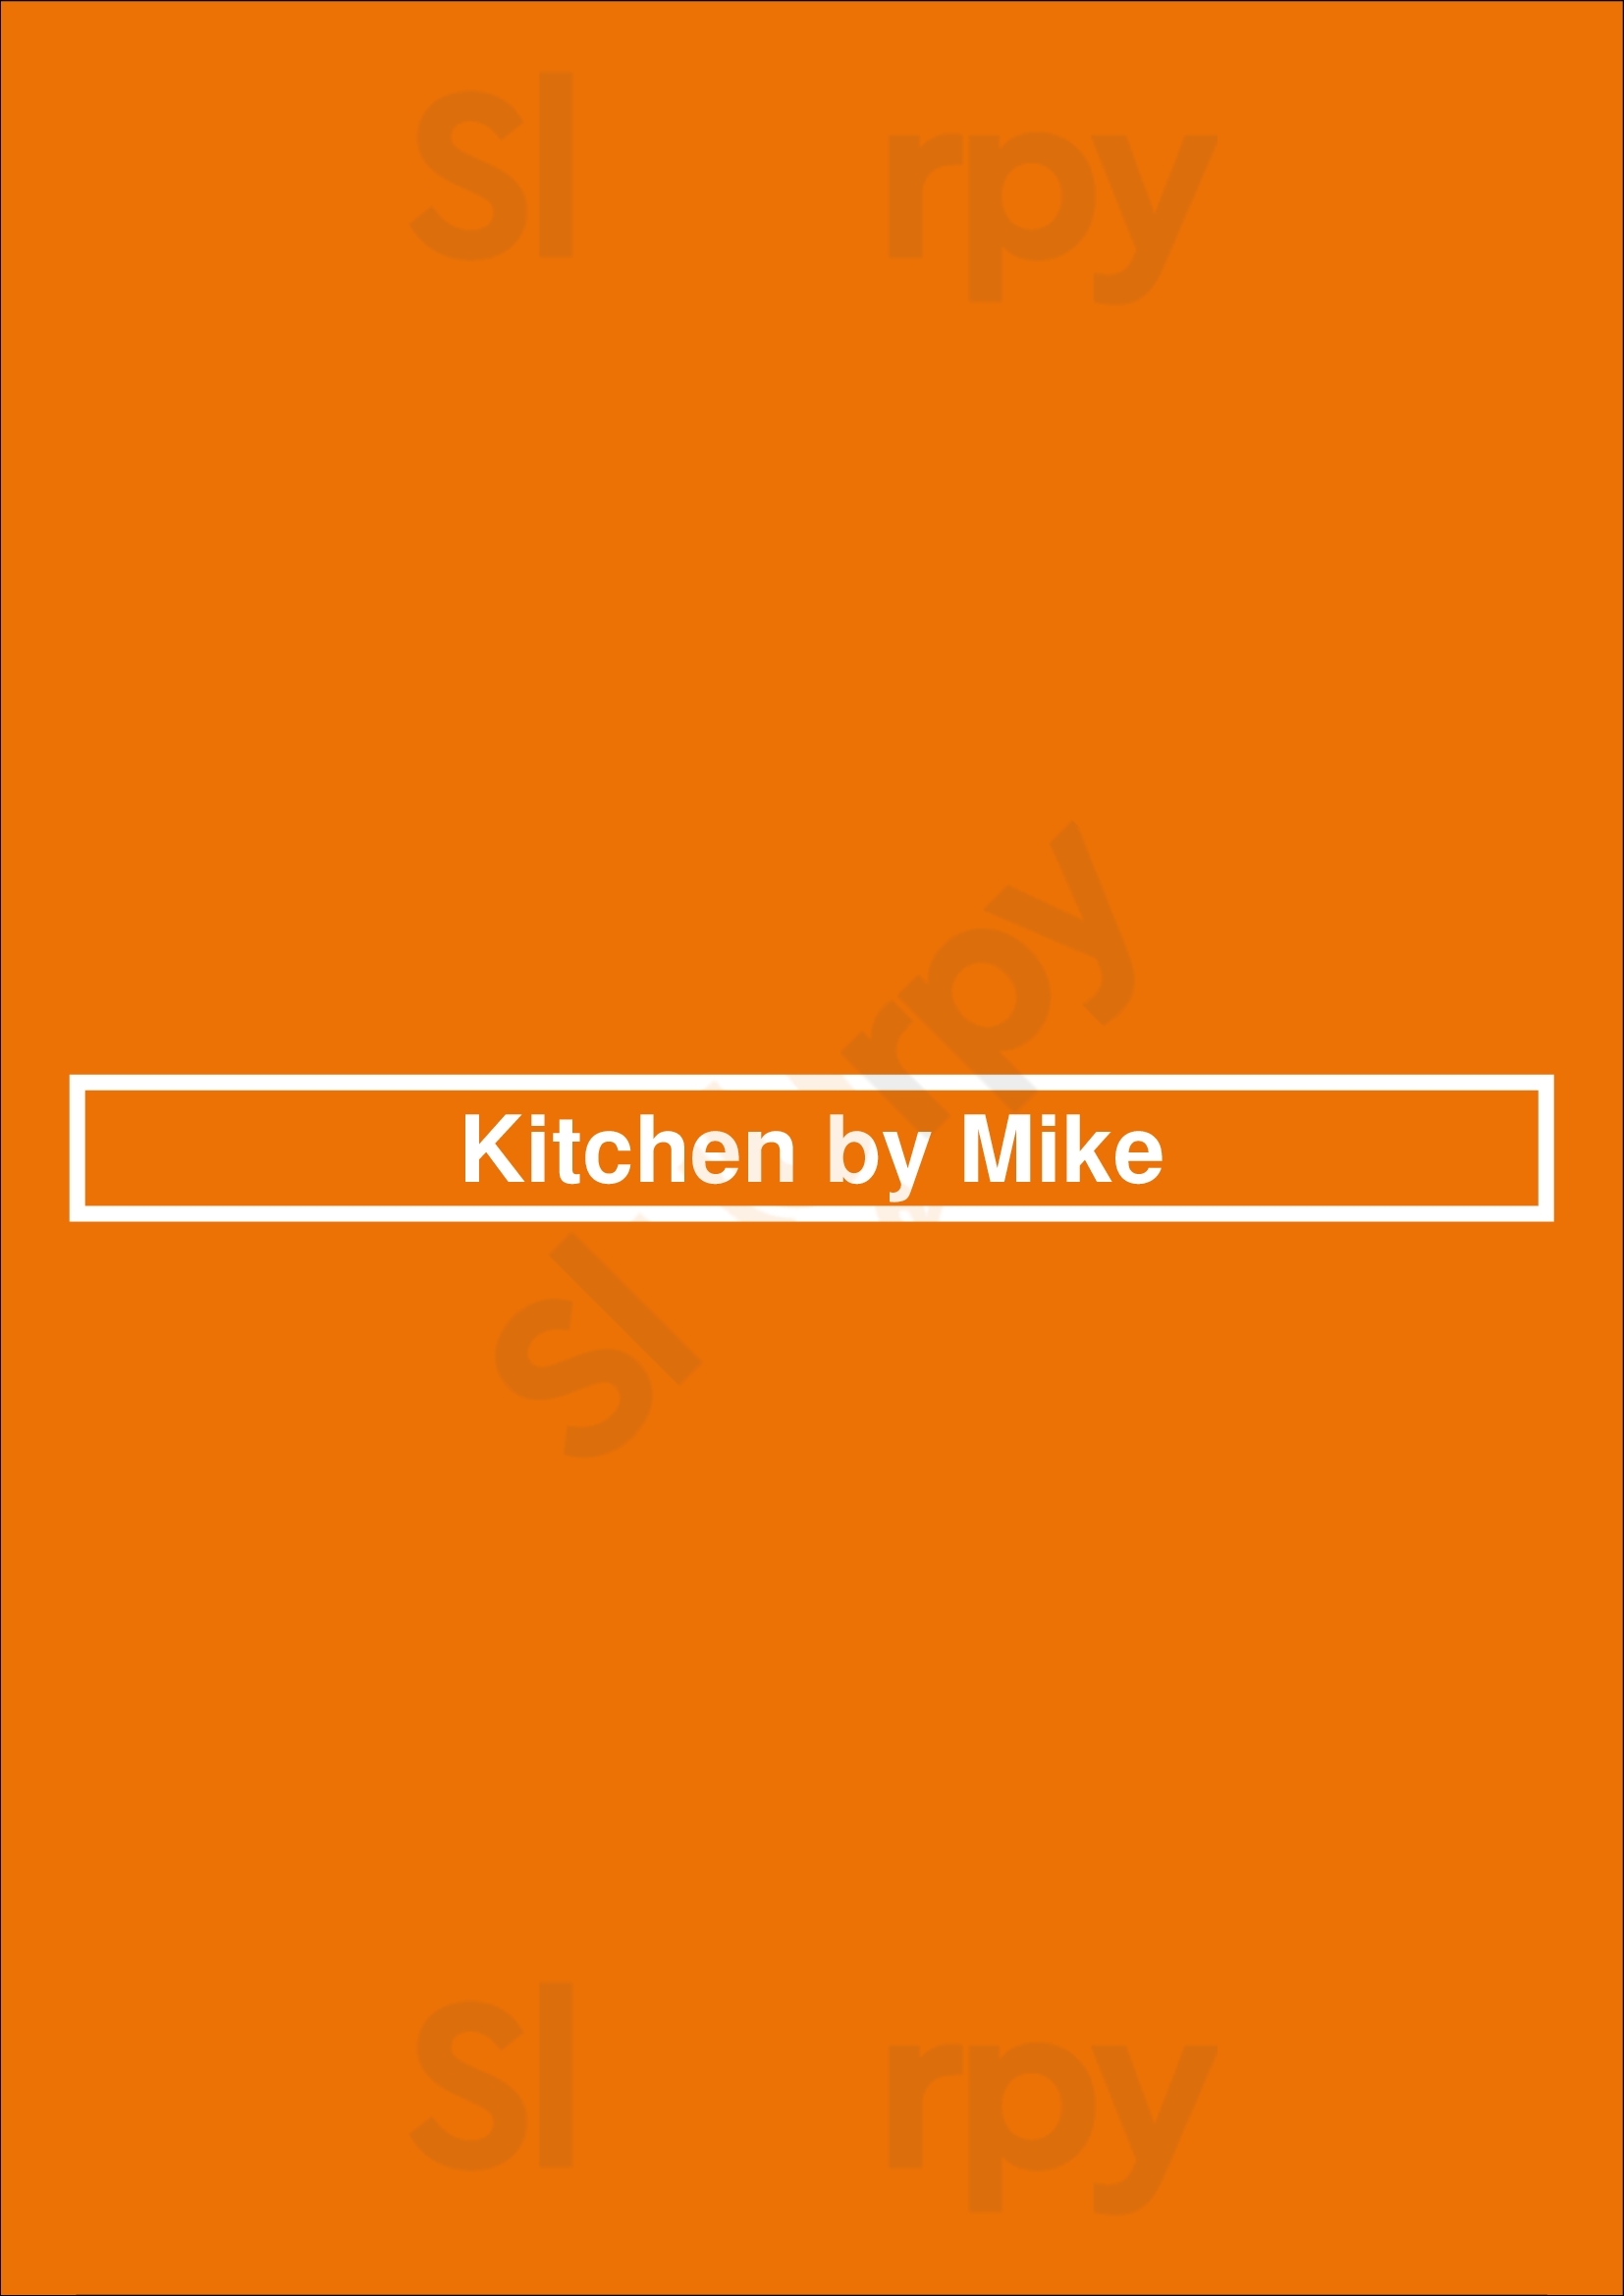 Kitchen By Mike Sydney Menu - 1